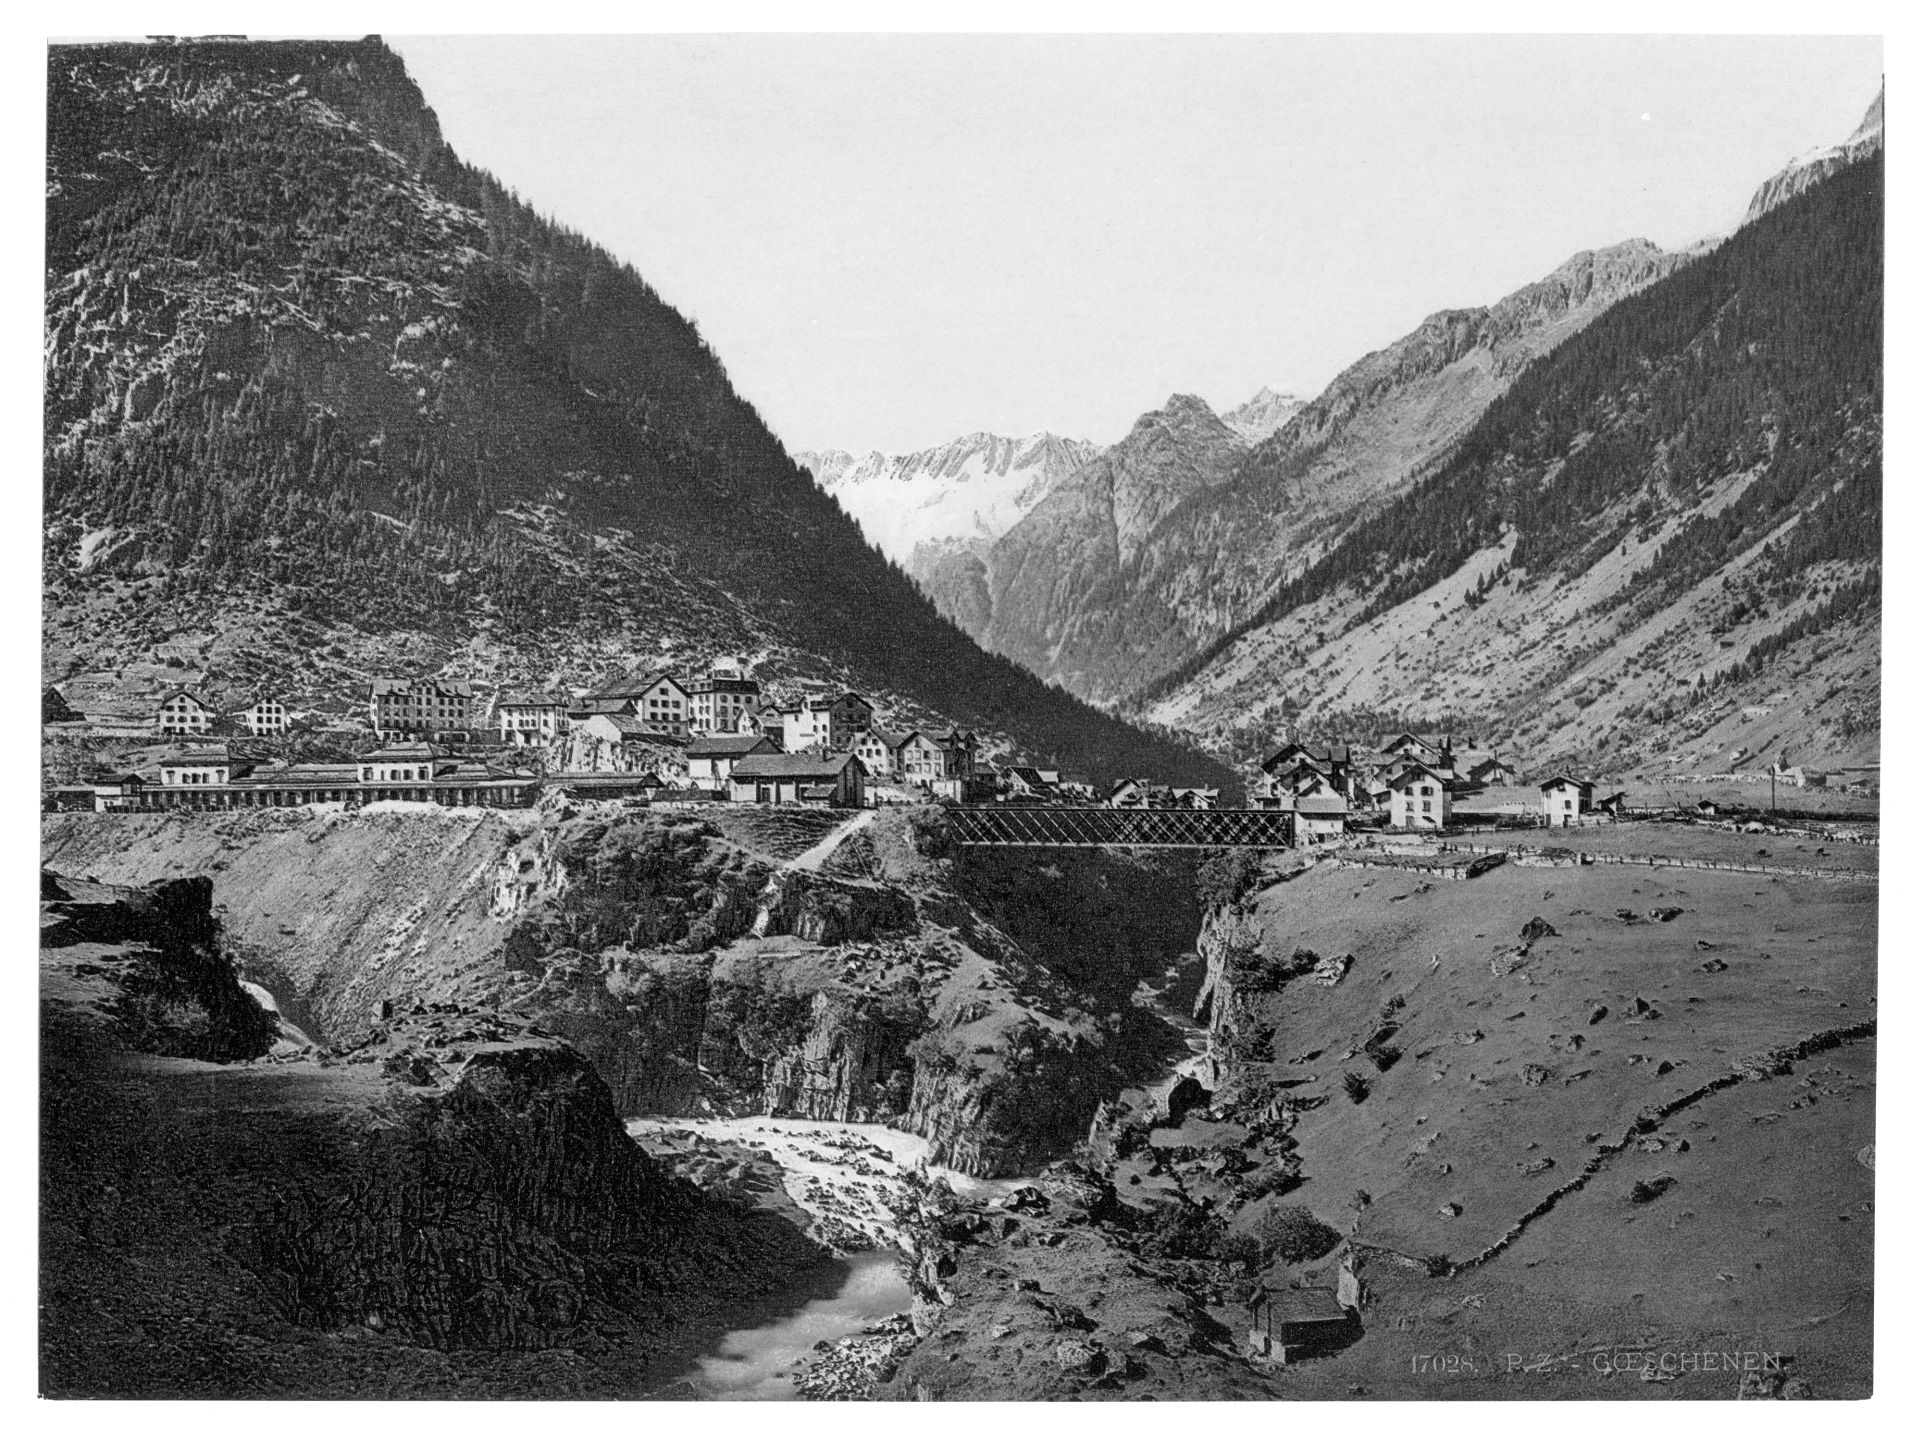 Goschenen, general view, St. Gotthard Railway, Switzerland